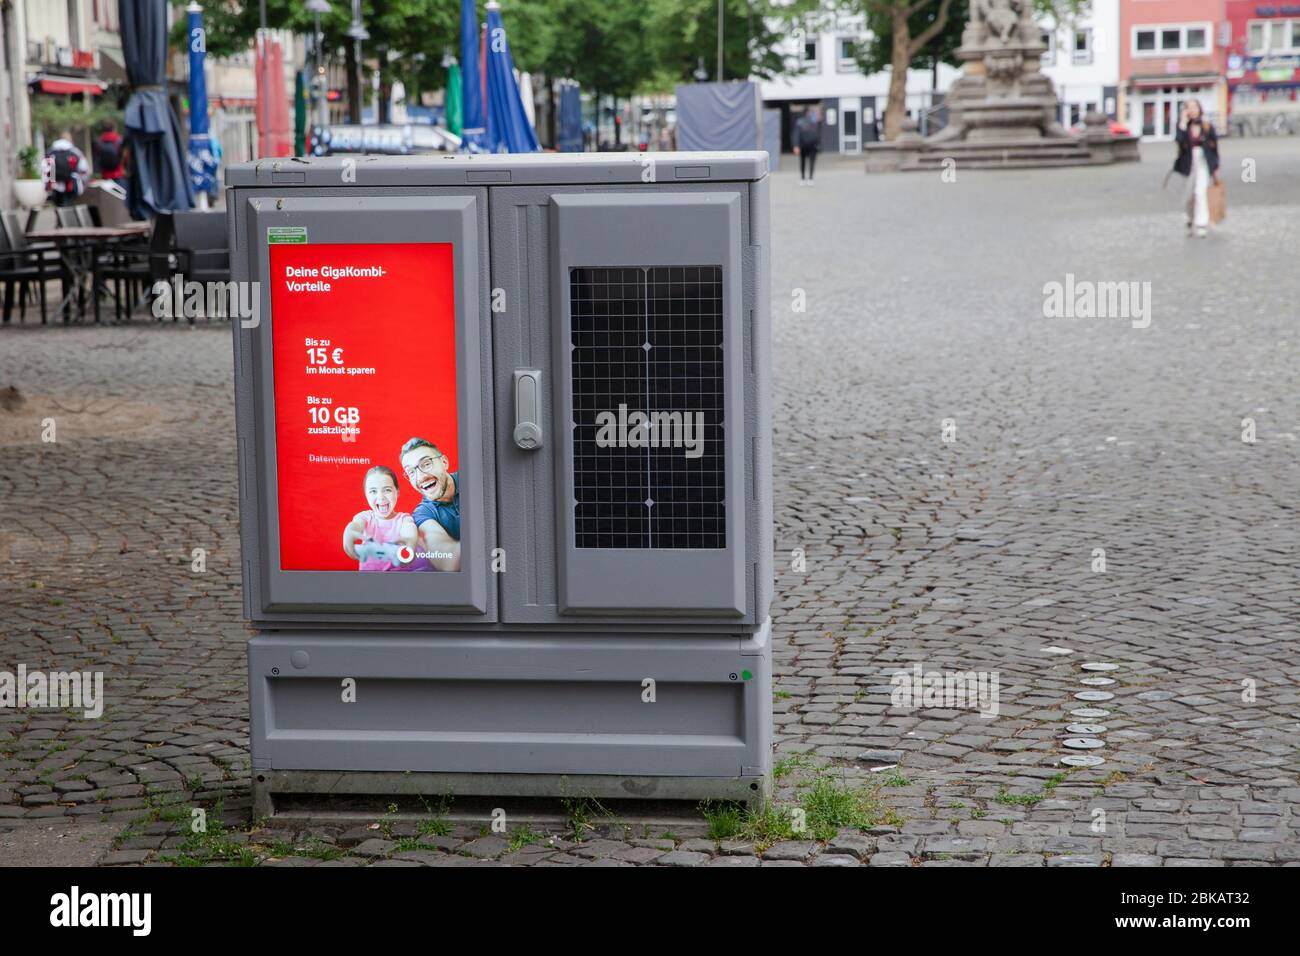 Digitales Display für Werbung und Solarmodul auf einem Schaltschrank am Alten Markt, Köln. digitales Display für Werbung und Solarmodul Stockfoto